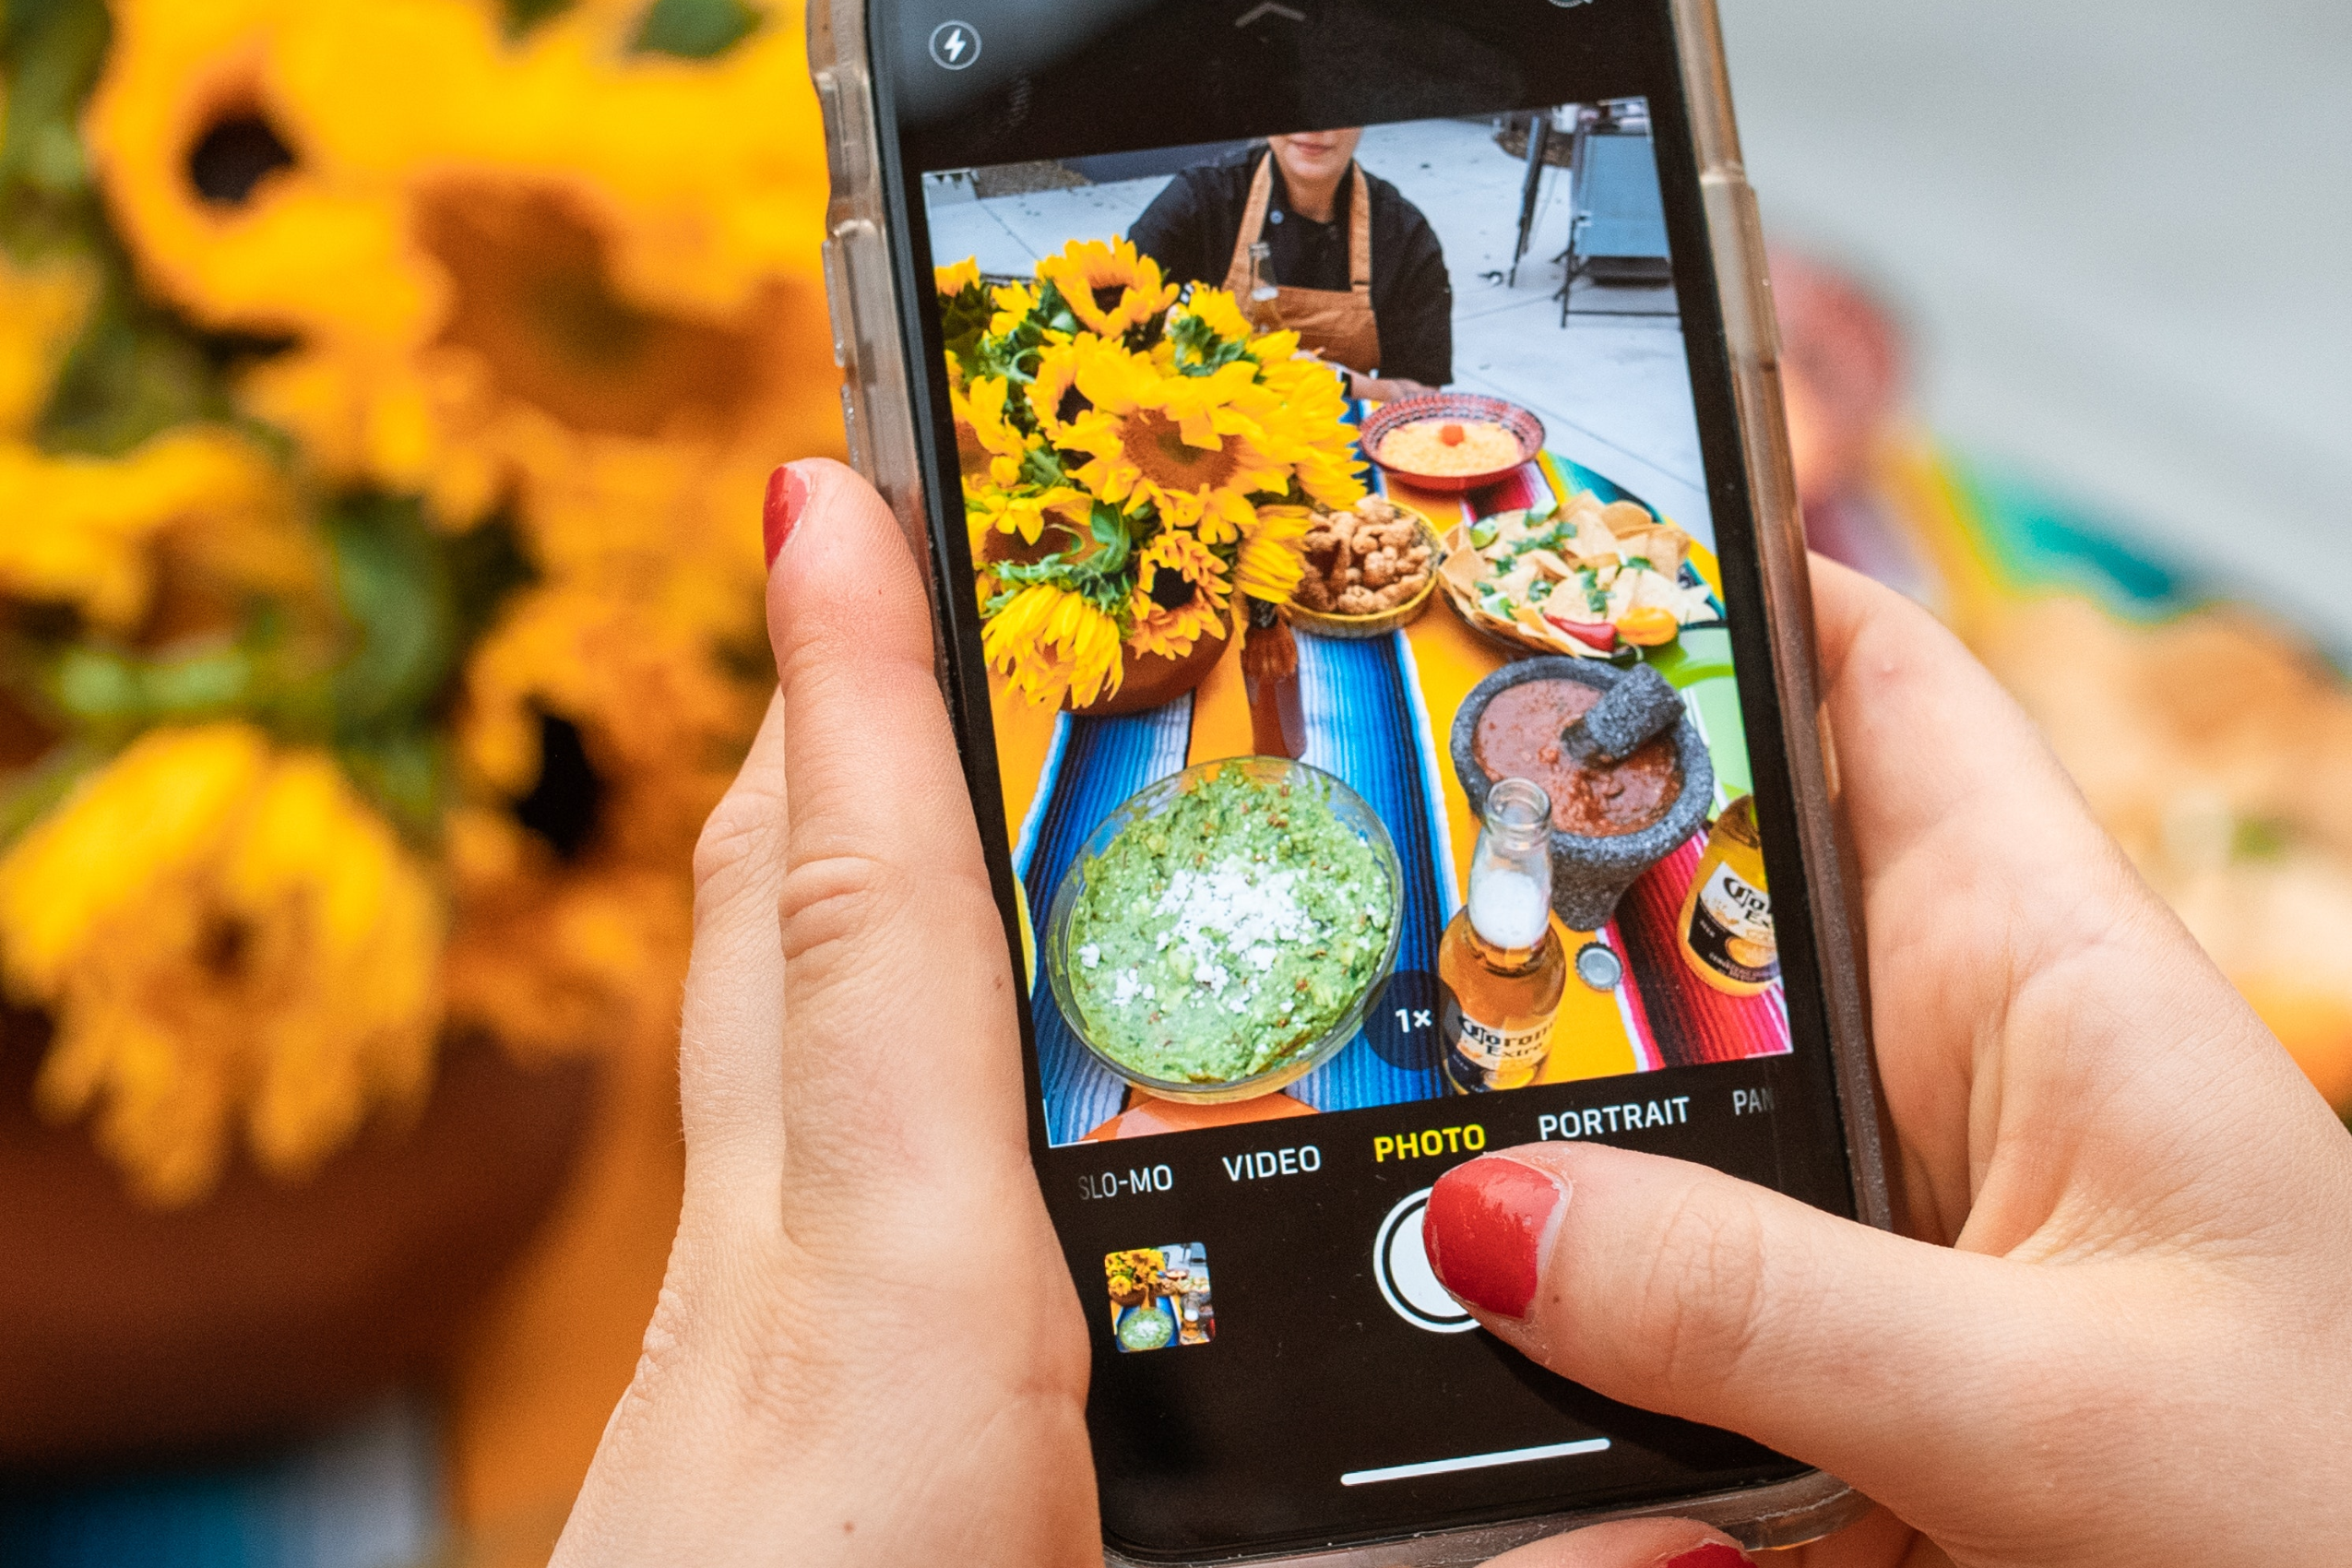 A imagem mostra, ao fundo, uma mesa arrumada com girassóis e comidas. No primeiro plano, celular fotografa a cena.